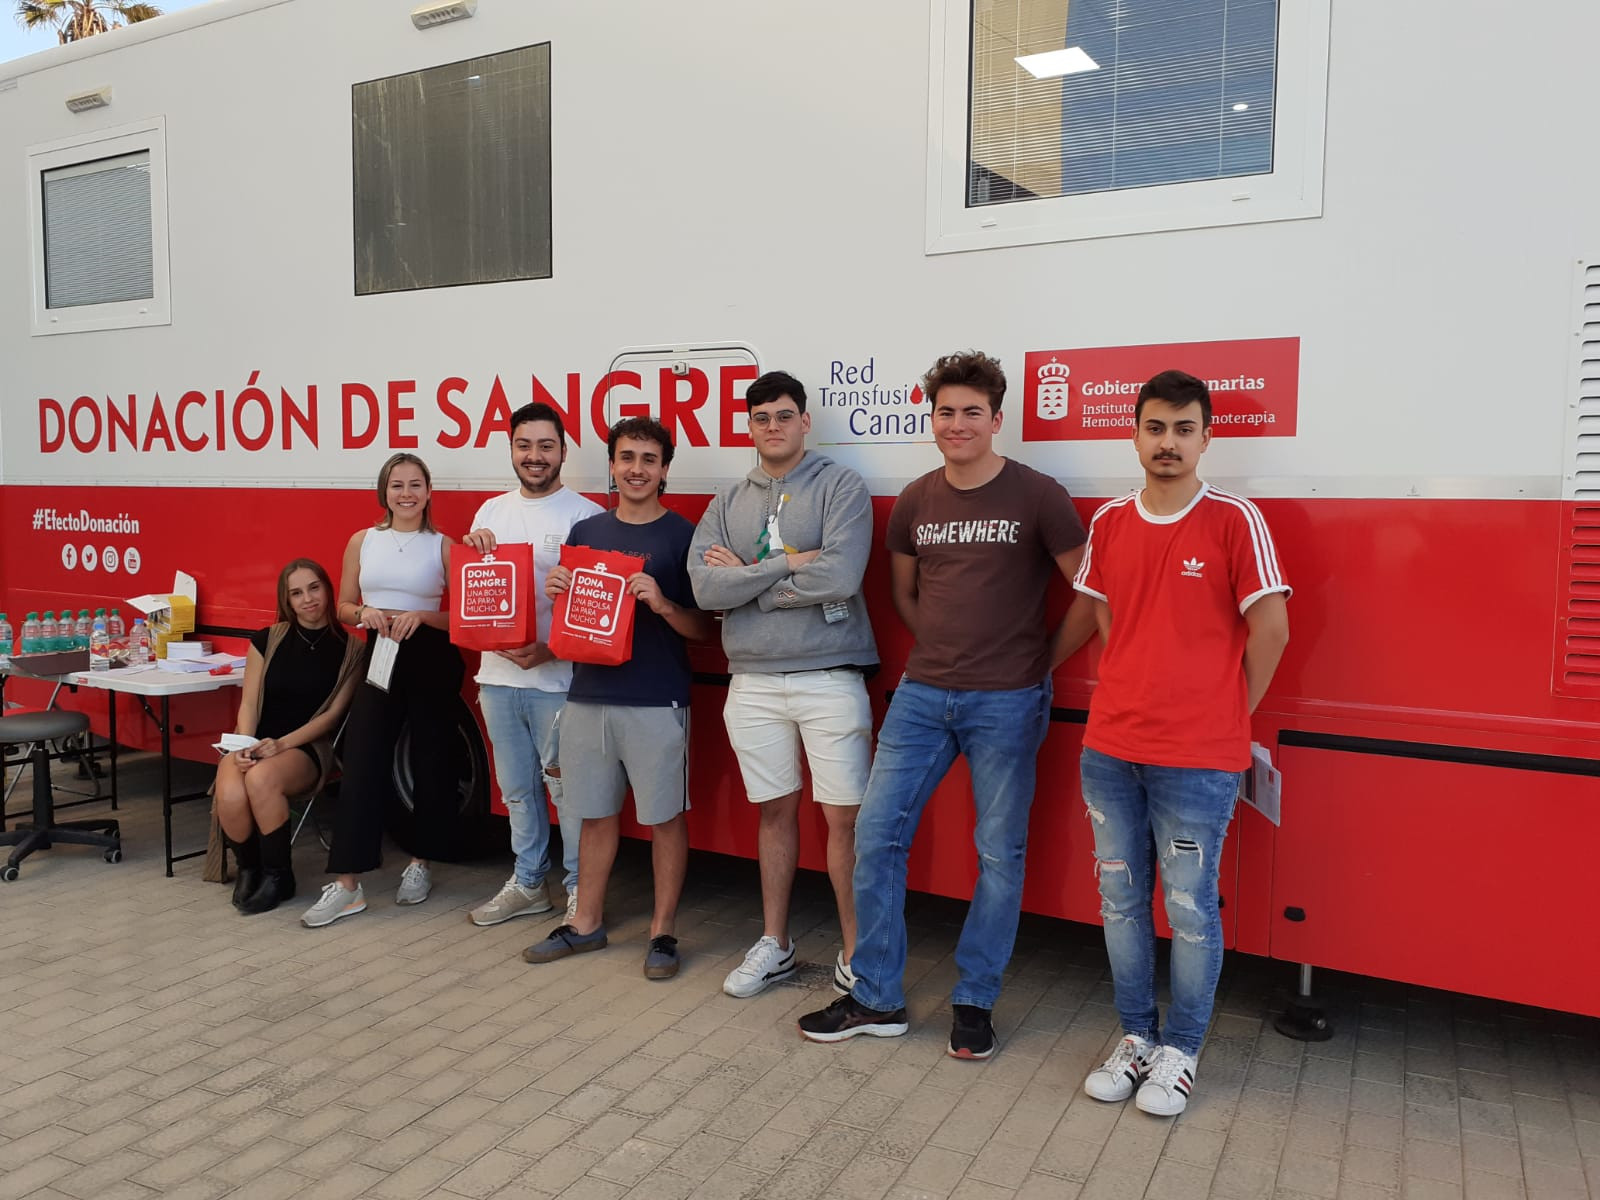 El ICHH organiza una nueva campaña de donación de sangre en la Universidad Fernando Pessoa de Canarias